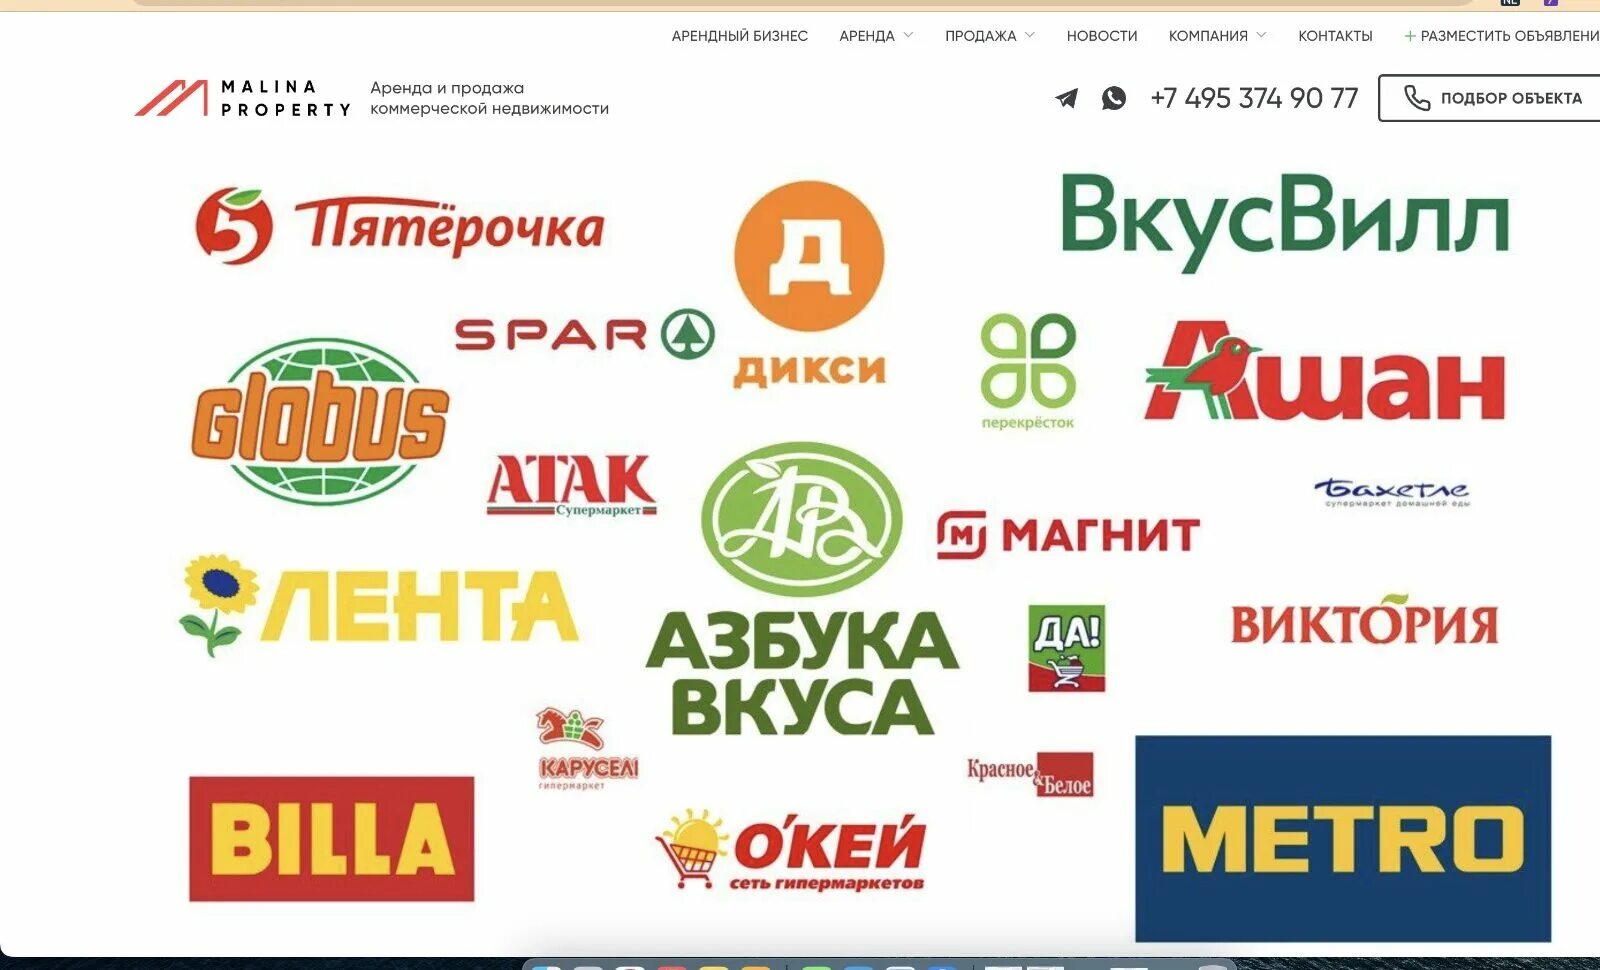 Популярные магазины в россии. Сетевые магазины. Крупные сетевые магазины. Сетевые продуктовые магазины. Логотипы продуктовых торговых сетей.